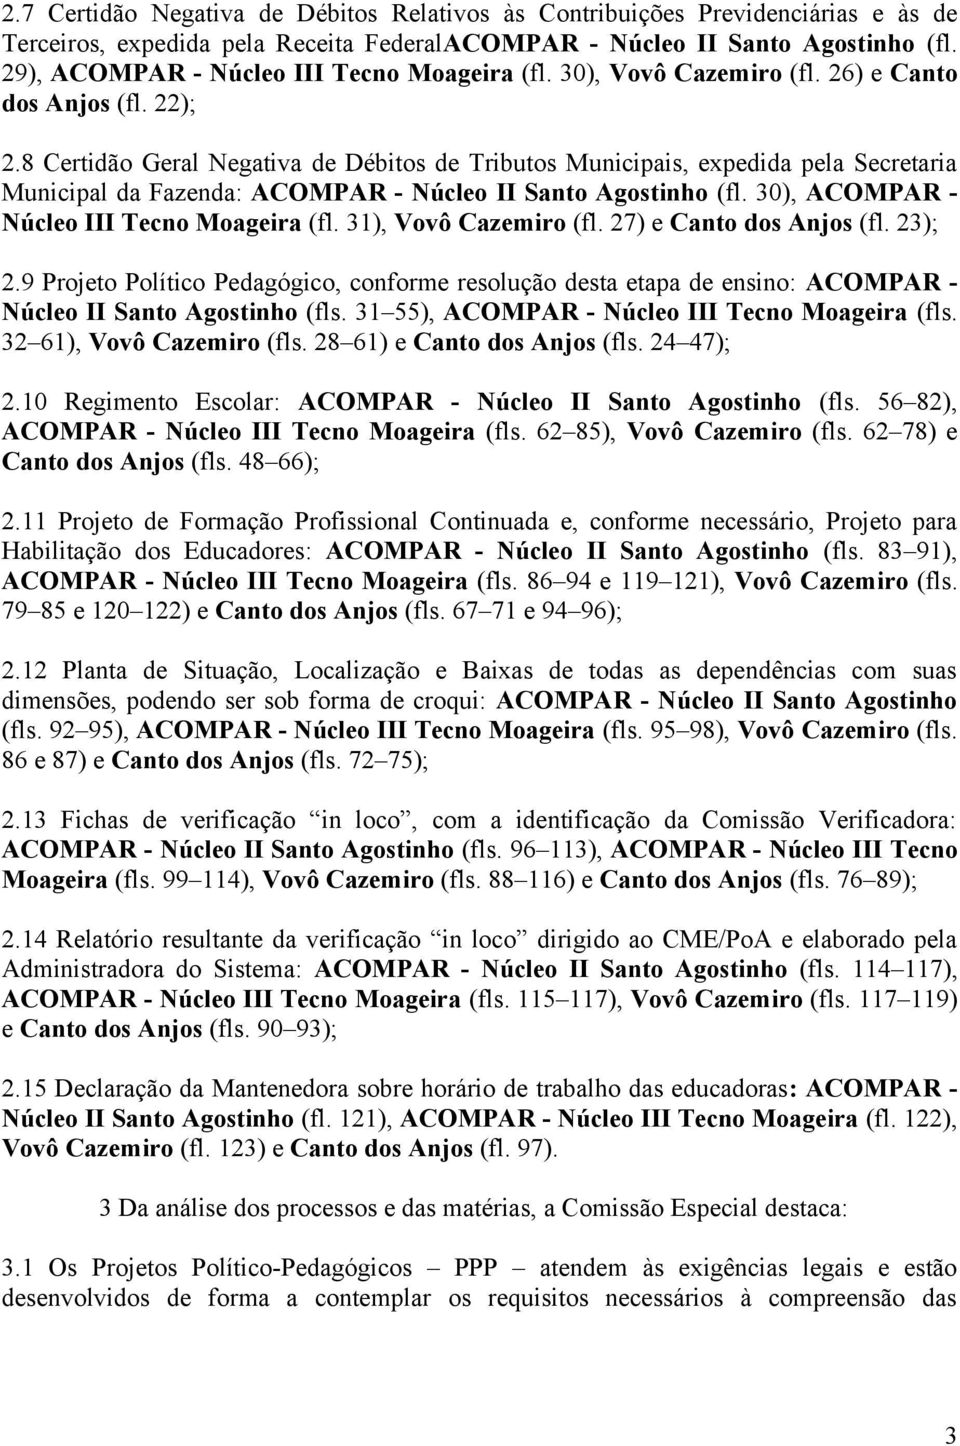 8 Certidão Geral Negativa de Débitos de Tributos Municipais, expedida pela Secretaria Municipal da Fazenda: ACOMPAR - Núcleo II Santo Agostinho (fl. 30), ACOMPAR - Núcleo III Tecno Moageira (fl.